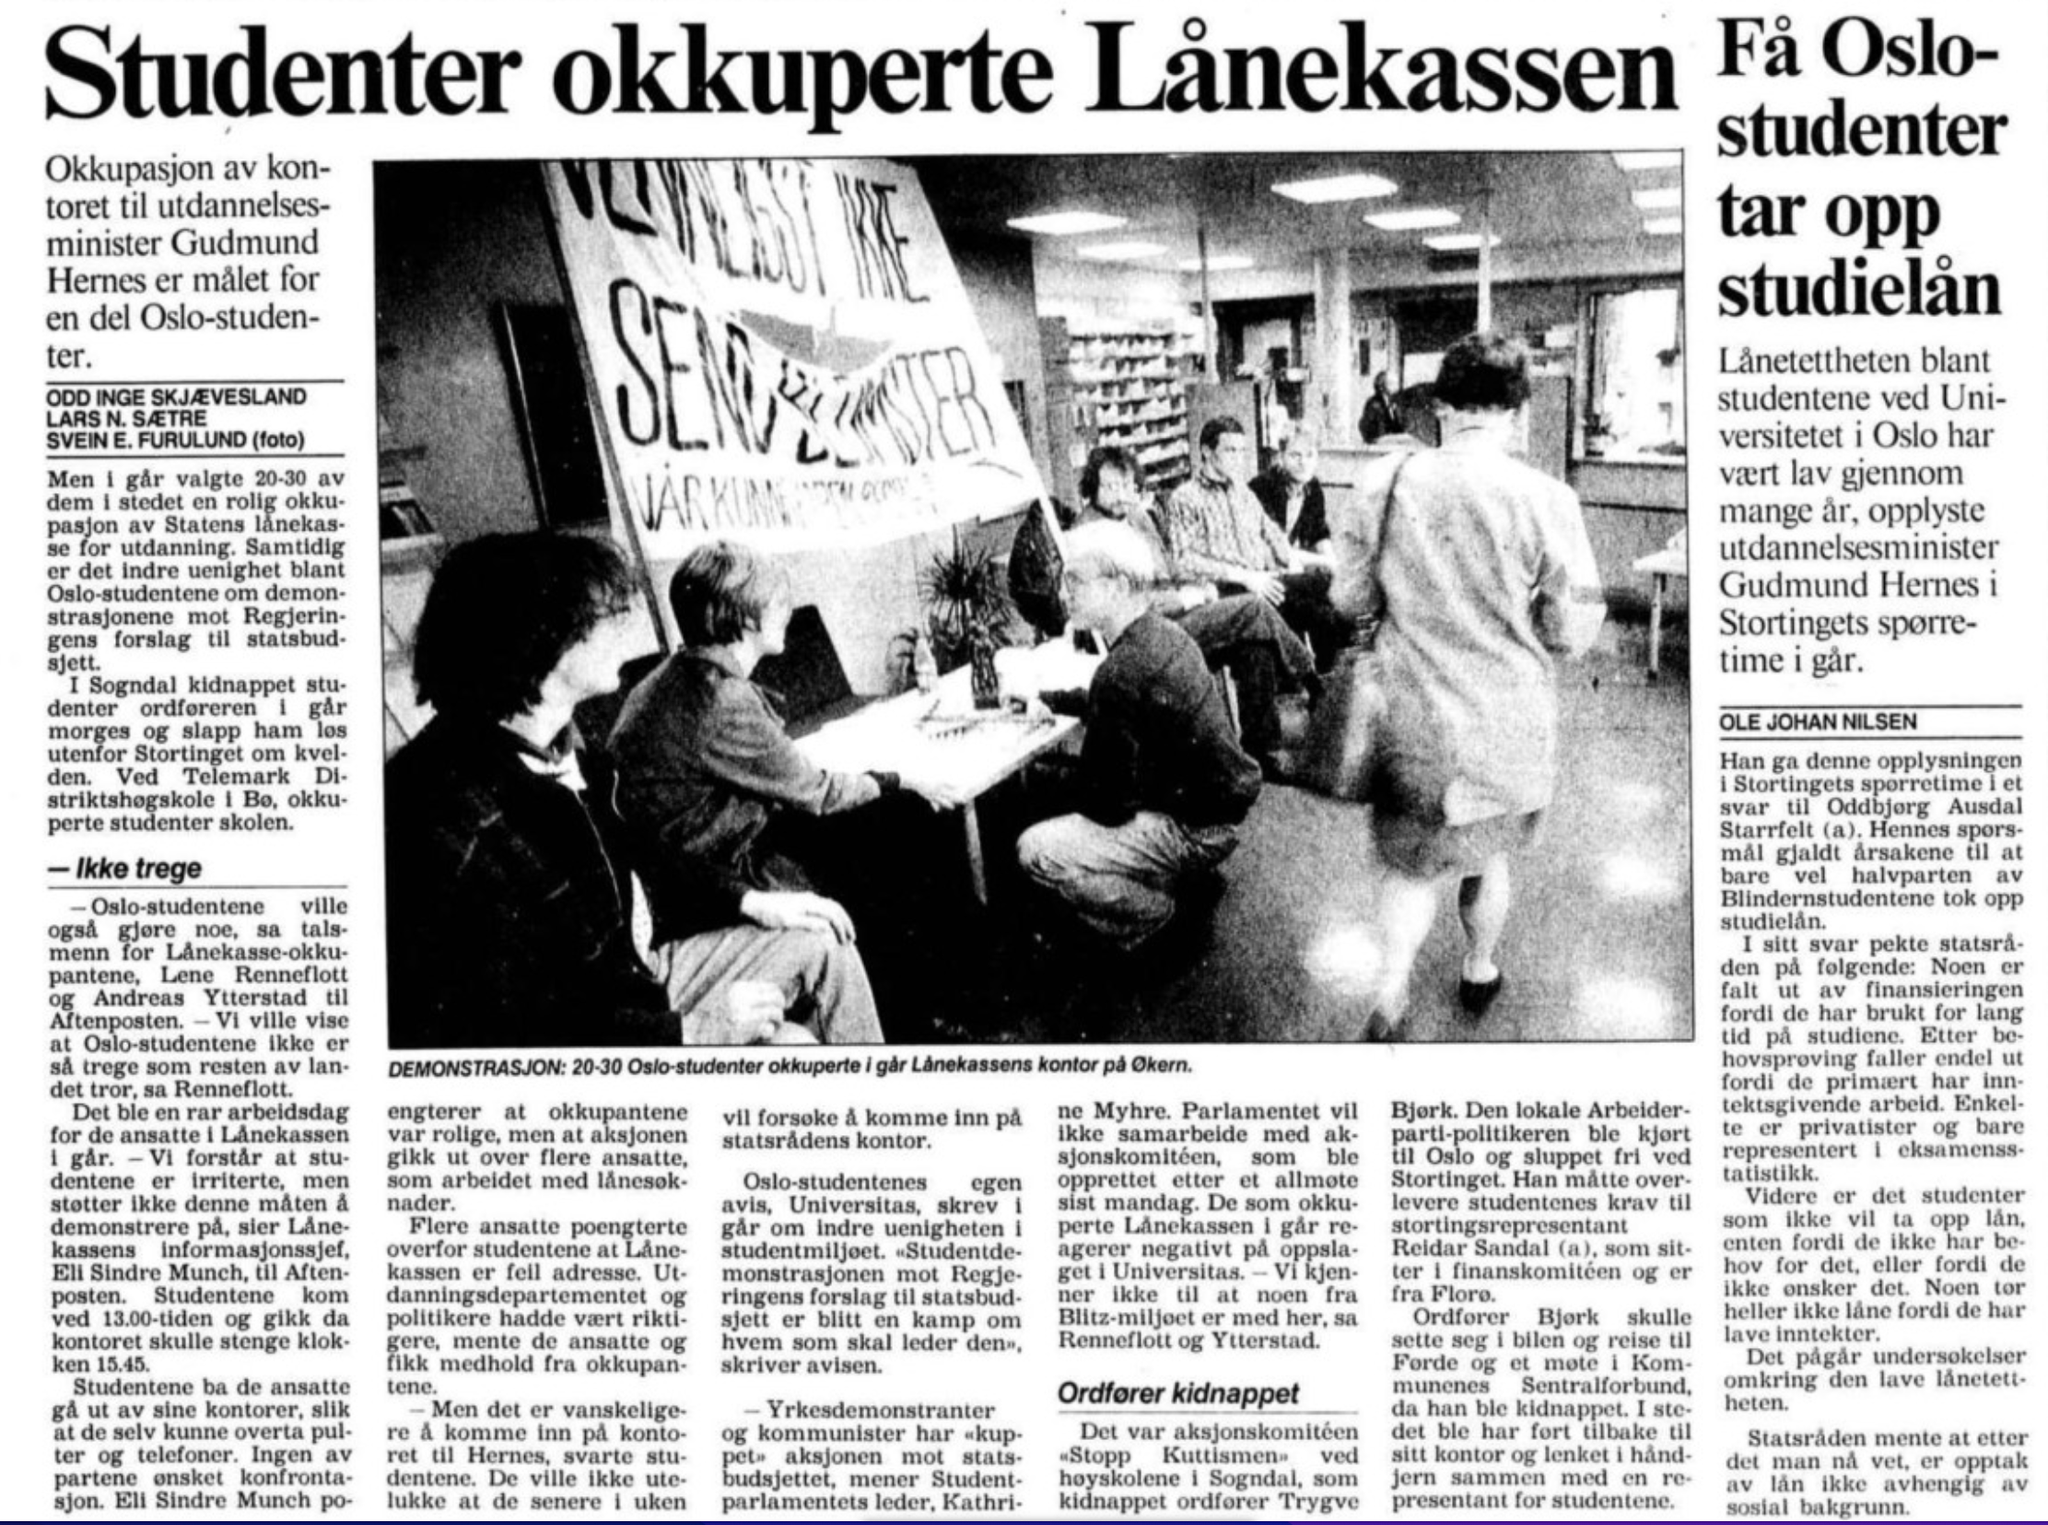 Én av aksjonene til opprørerne i −93 gikk ut på å okkupere Lånekassen kontorer. Målet var å også okkupere kontoret til utdanningsminister Gudmund Hernes. 